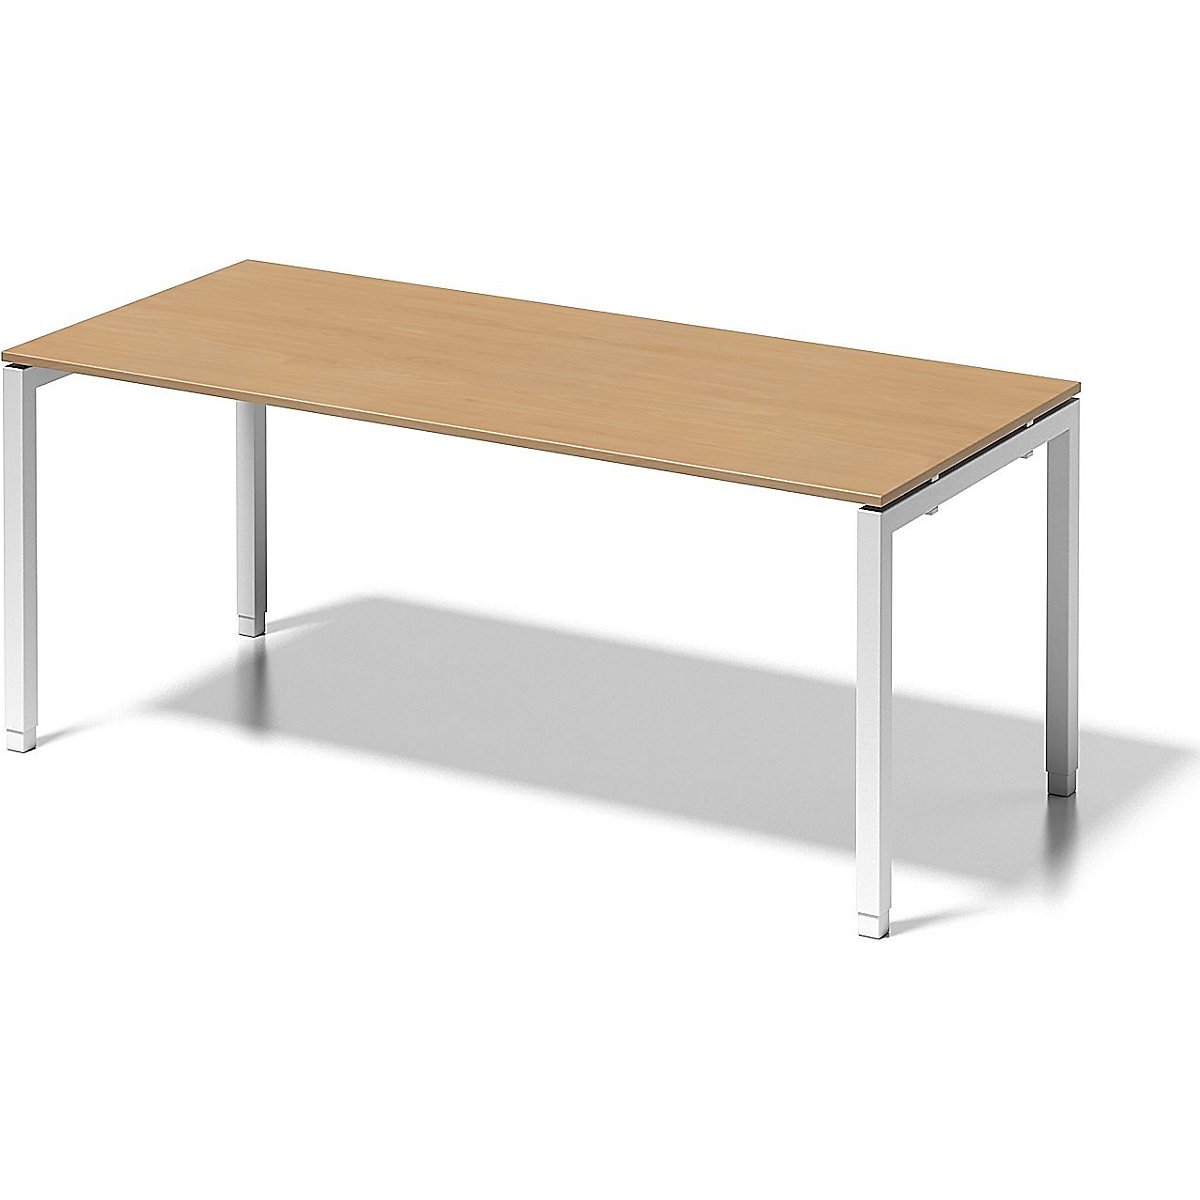 Písací stôl CITO, podstavec v tvare U – BISLEY, v x š x h 650– 850 x 1800 x 800 mm, podstavec biela, doska stola buk-6